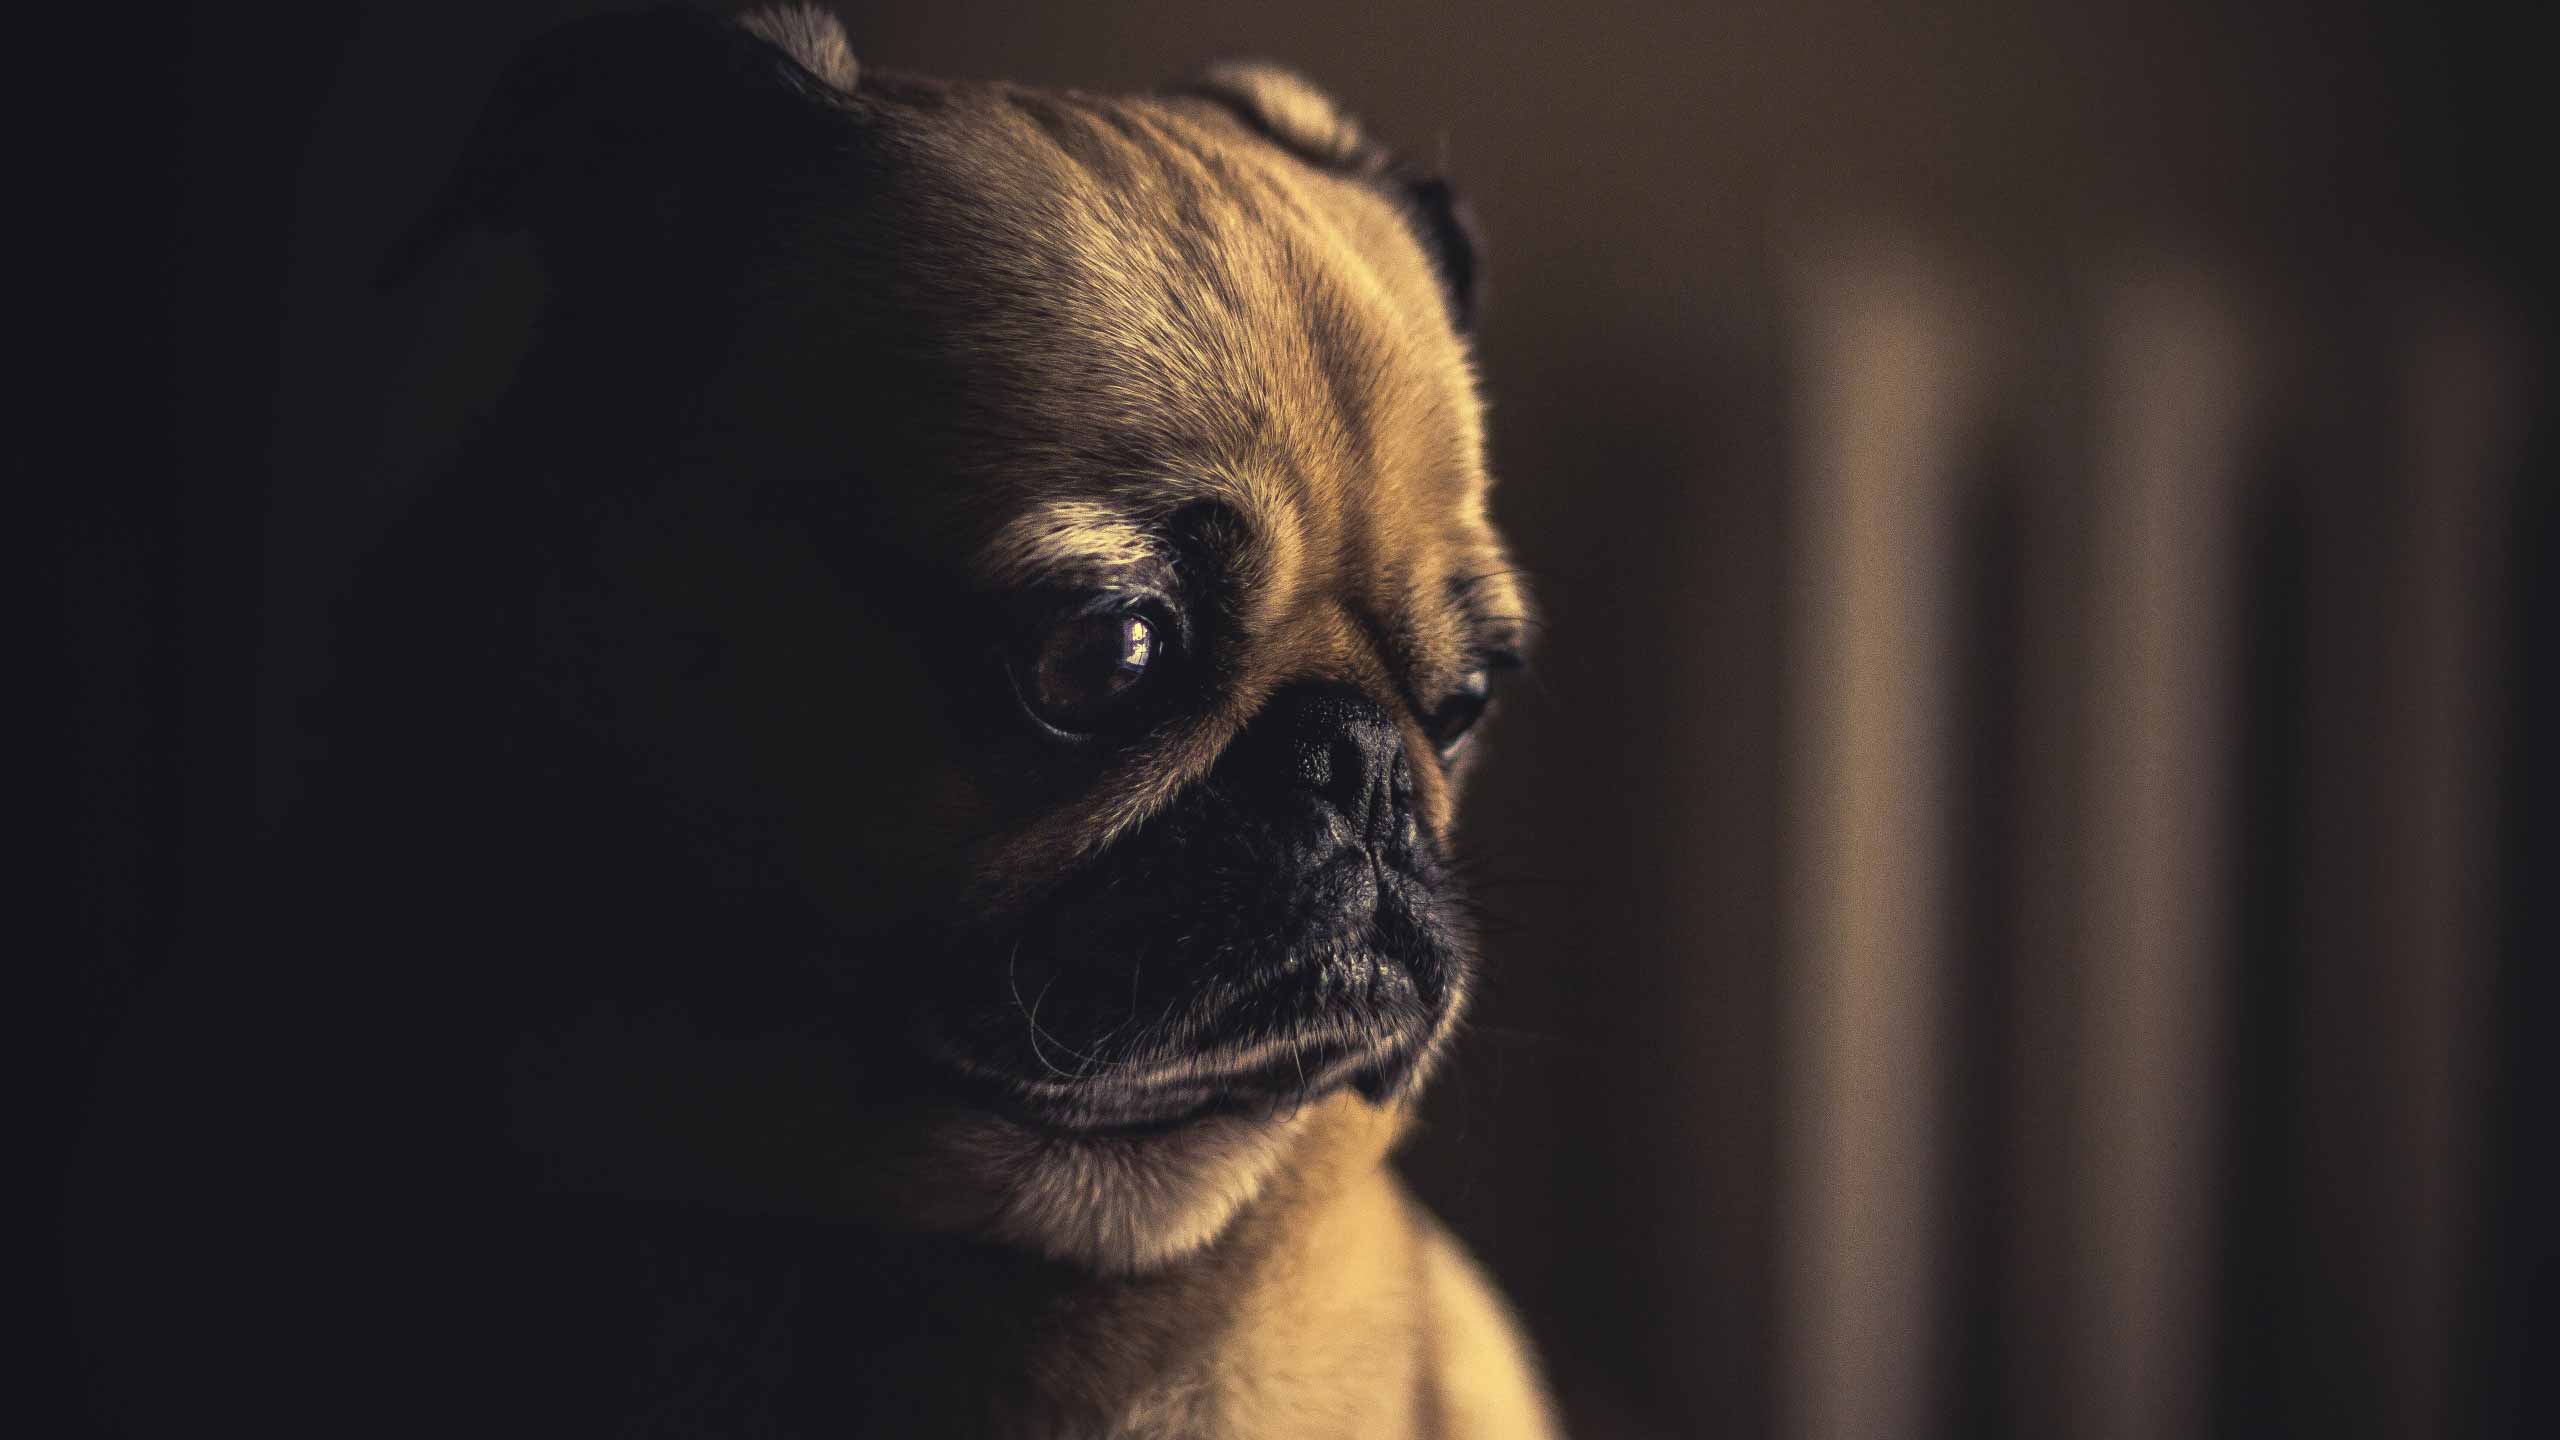 Hình ảnh chó buồn: Chó cũng có cảm xúc riêng và chúng cũng có thể trầm cảm, buồn bã. Những bức ảnh chó buồn sẽ làm bạn động lòng và cảm nhận được tình cảm chân thành của loài vật này đối với con người.